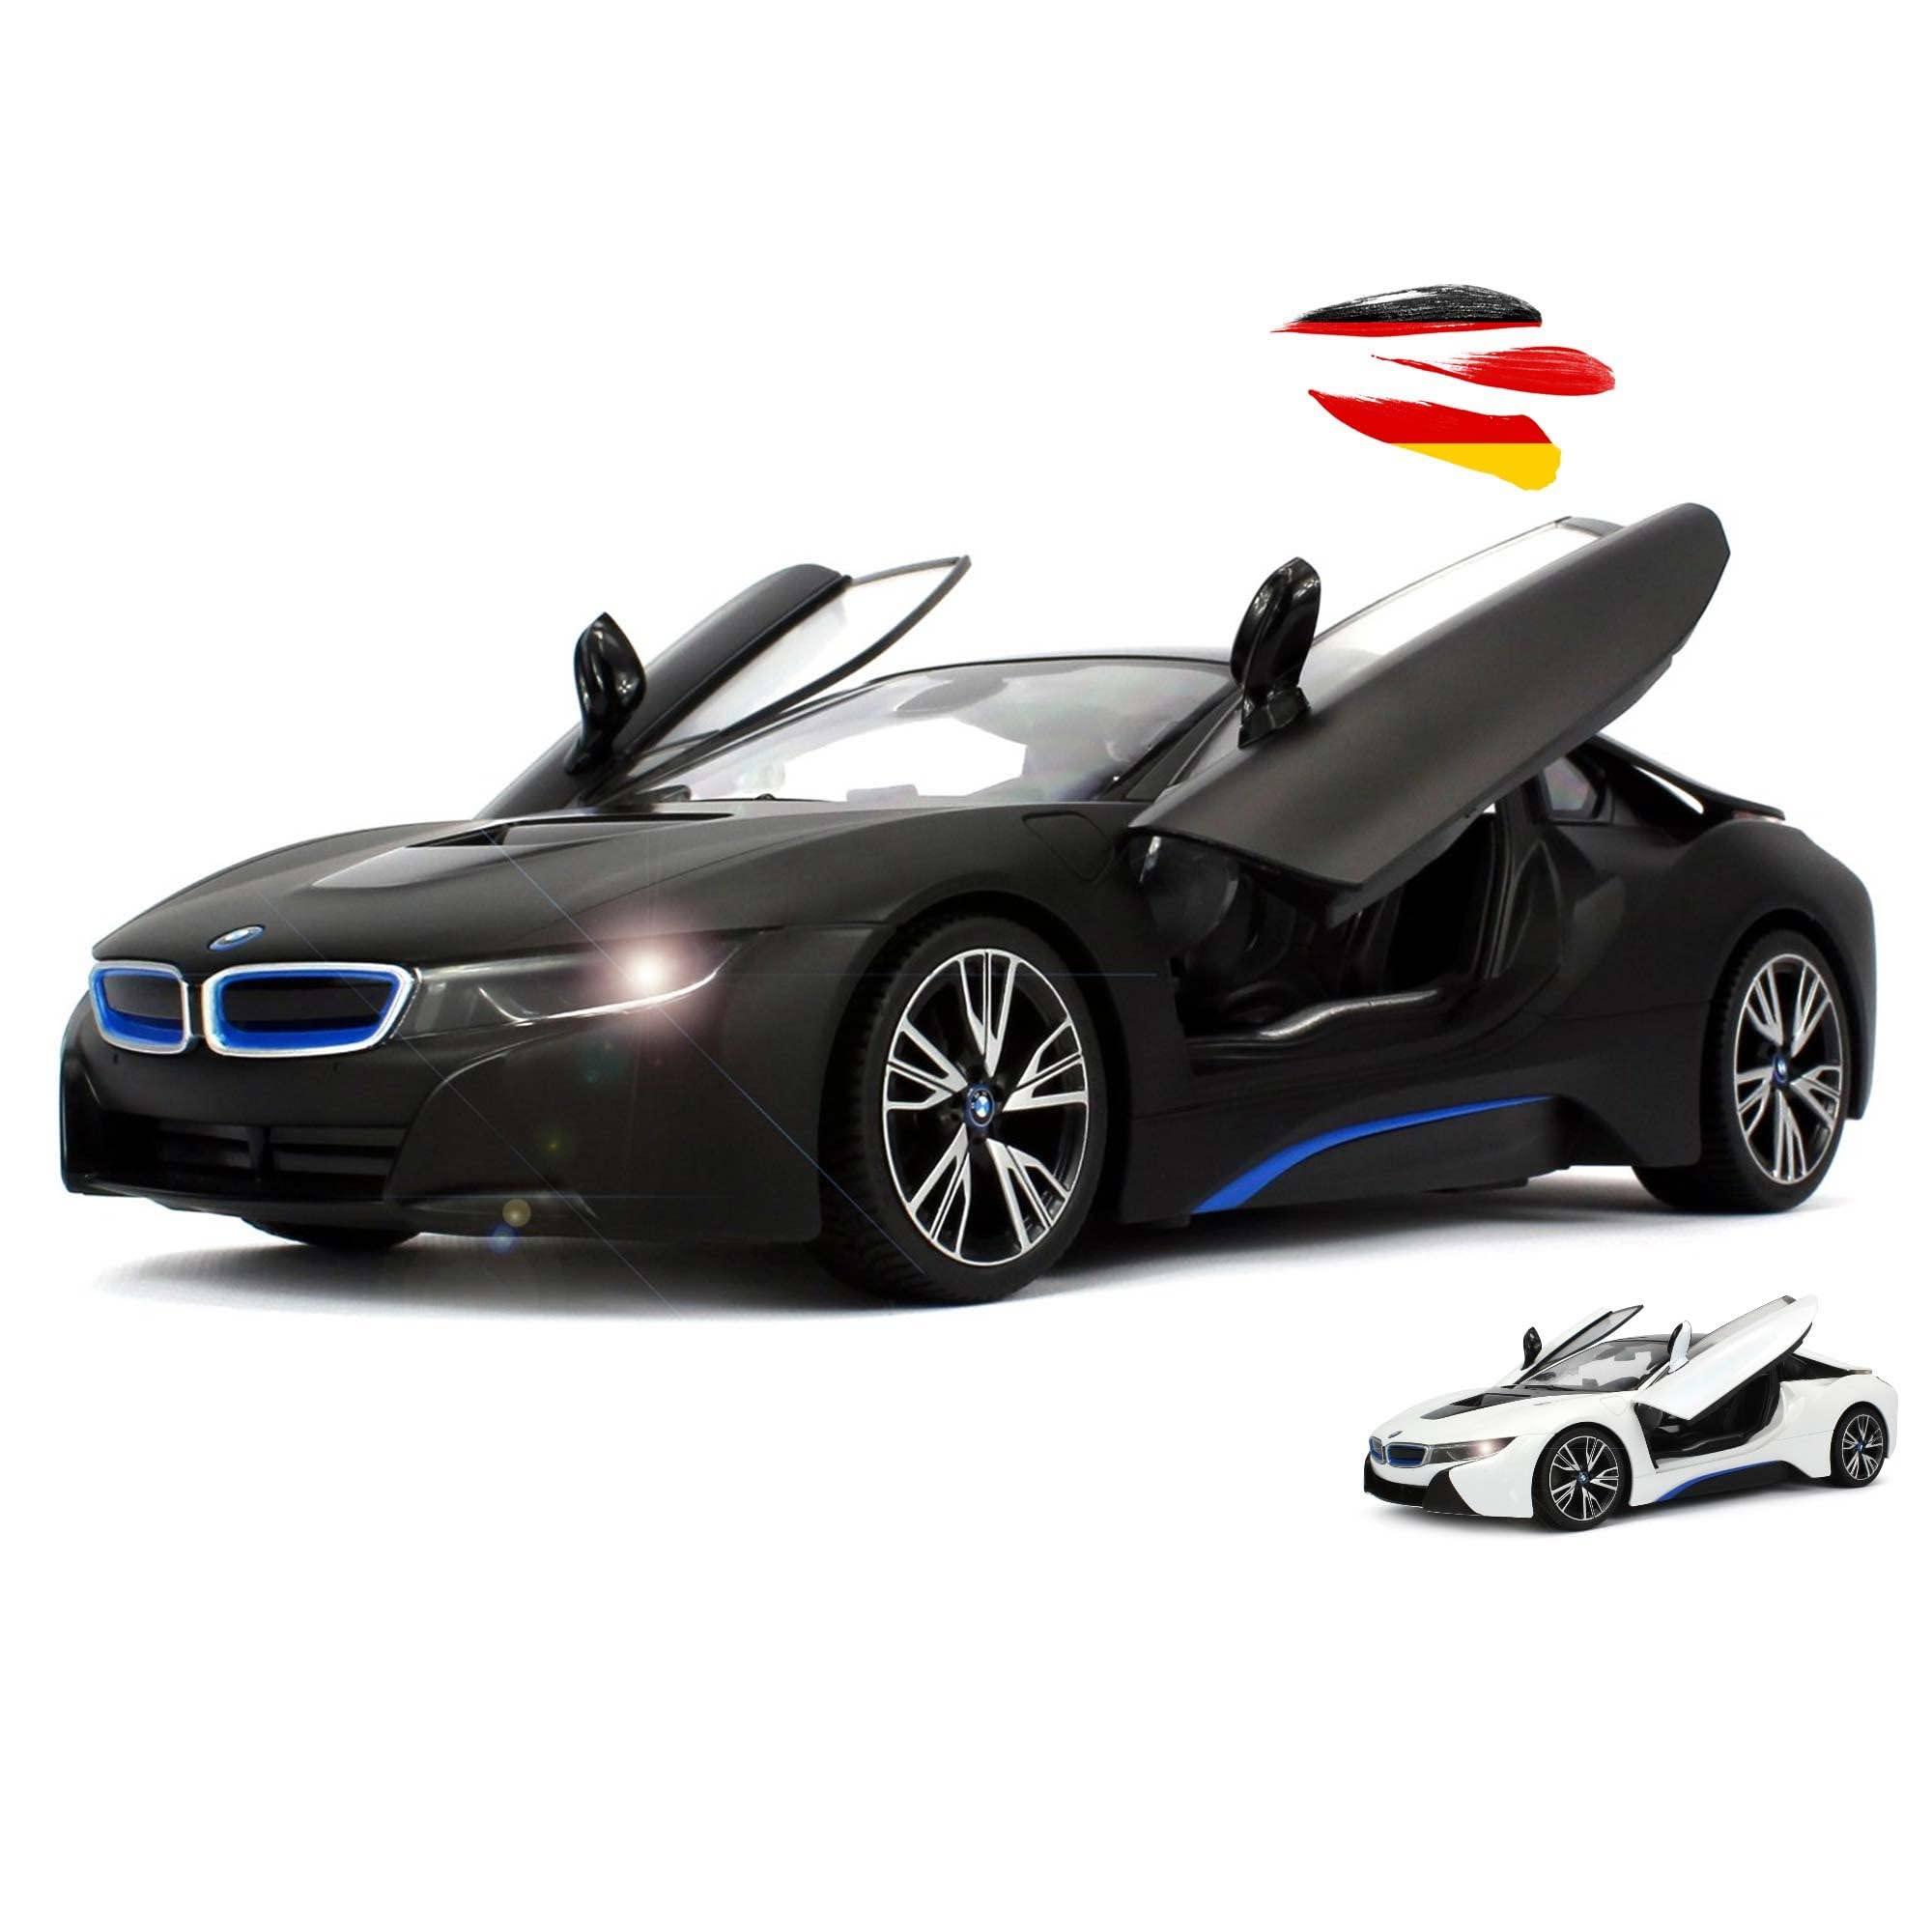 Bmw I8 Rc Car: BMW i8 RC Car Options and Reviews